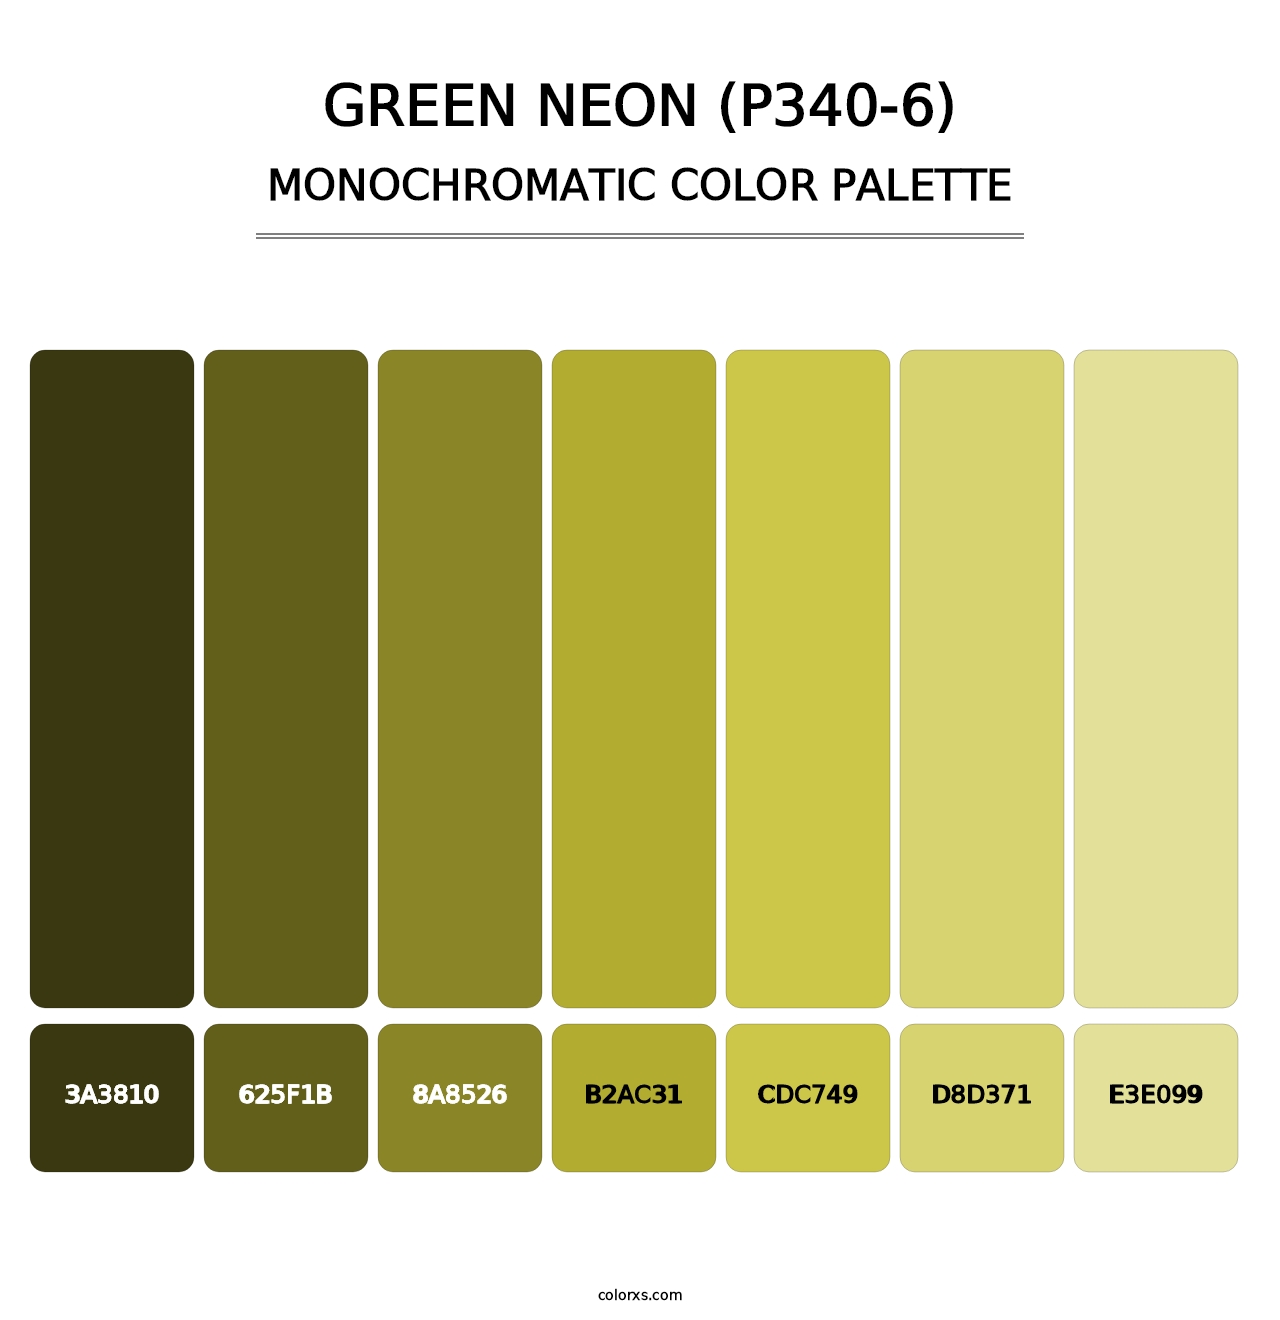 Green Neon (P340-6) - Monochromatic Color Palette